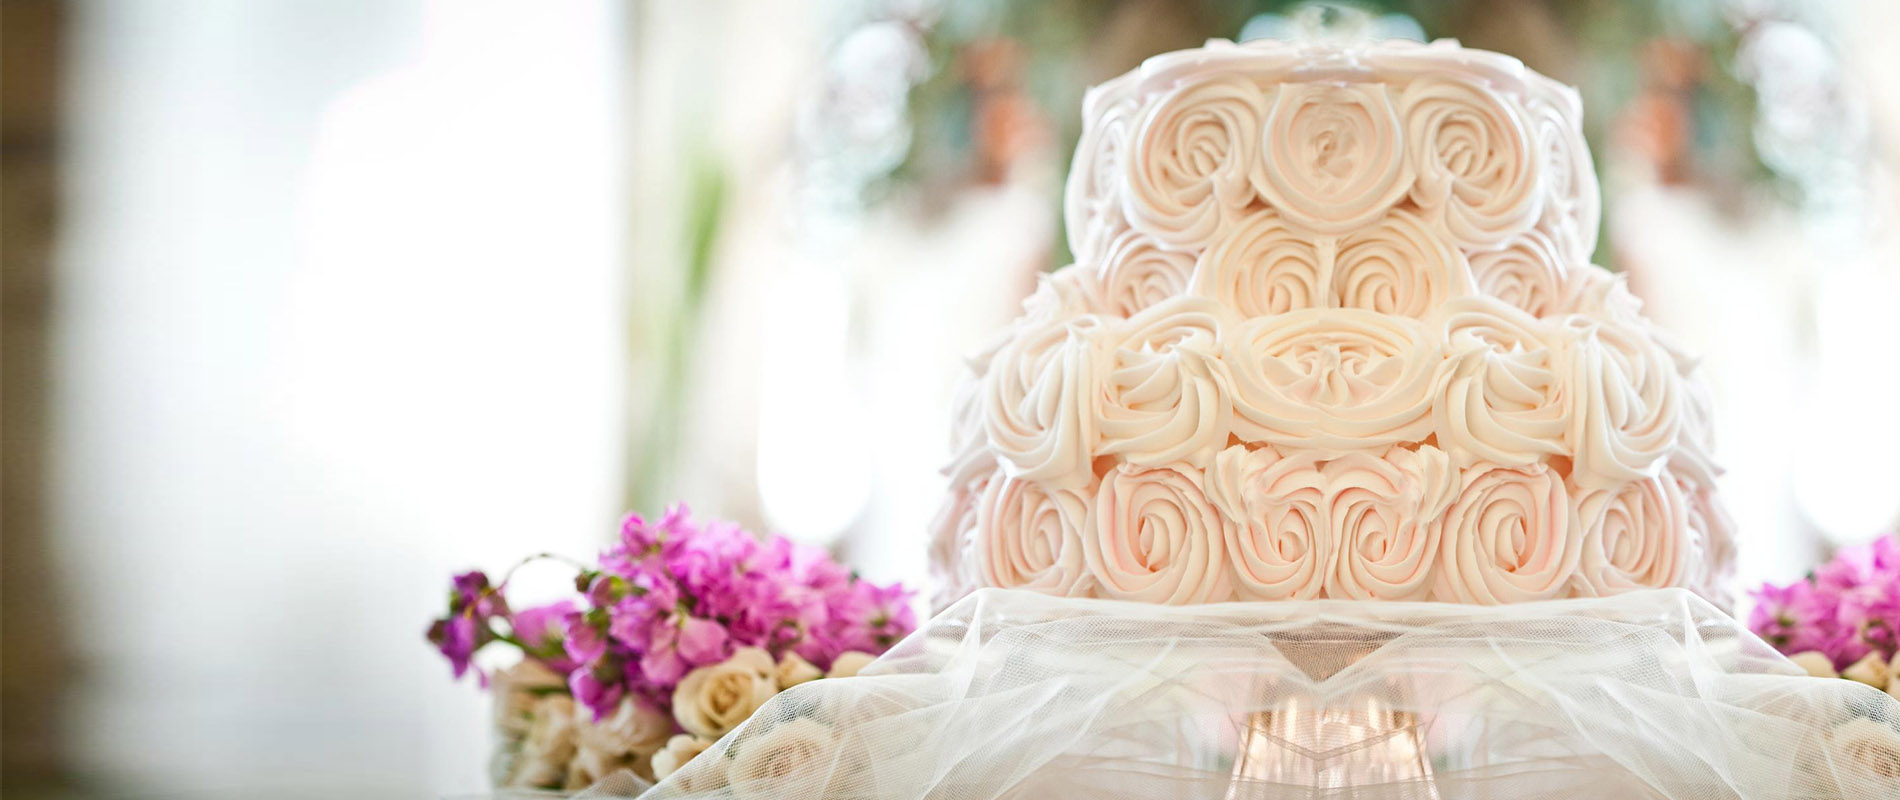 Spokane Wedding Cake